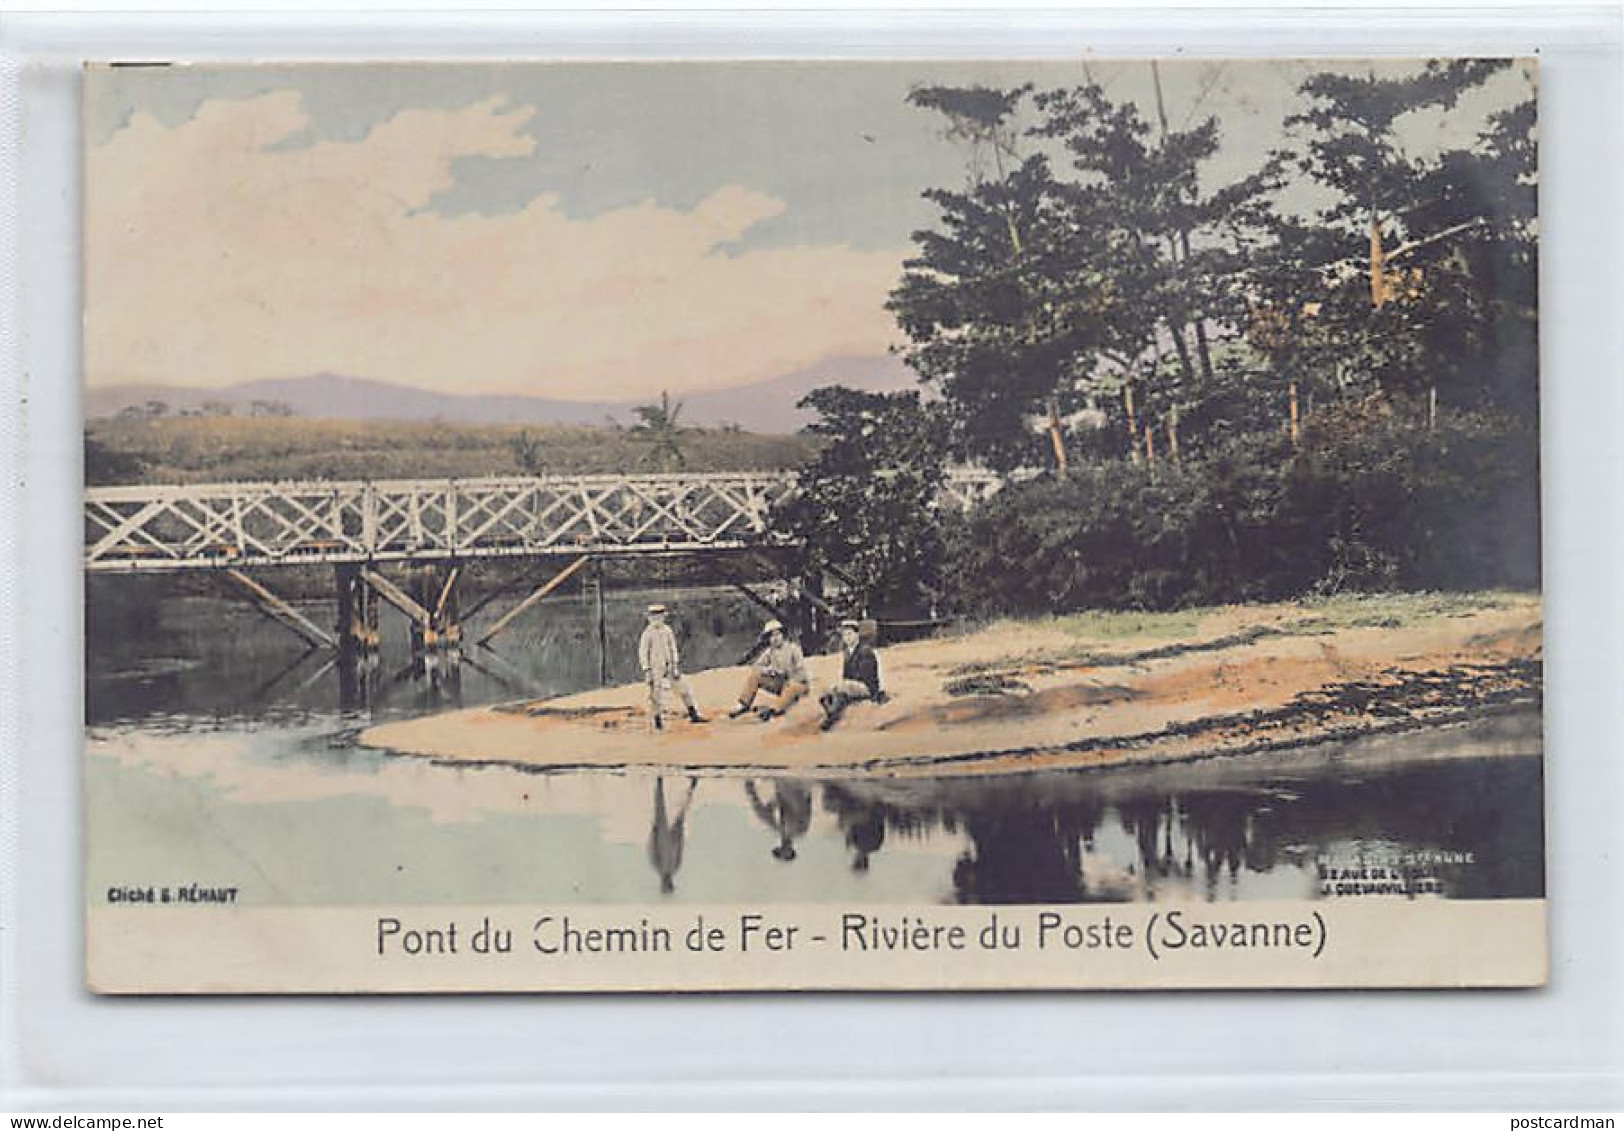 Mauritius - Pont Du Chemin De Fer - Rivière Du Poste (Savanne) - Publ. Cliché G. Réhaut - Magasins Sainte-Anne  - Mauritius